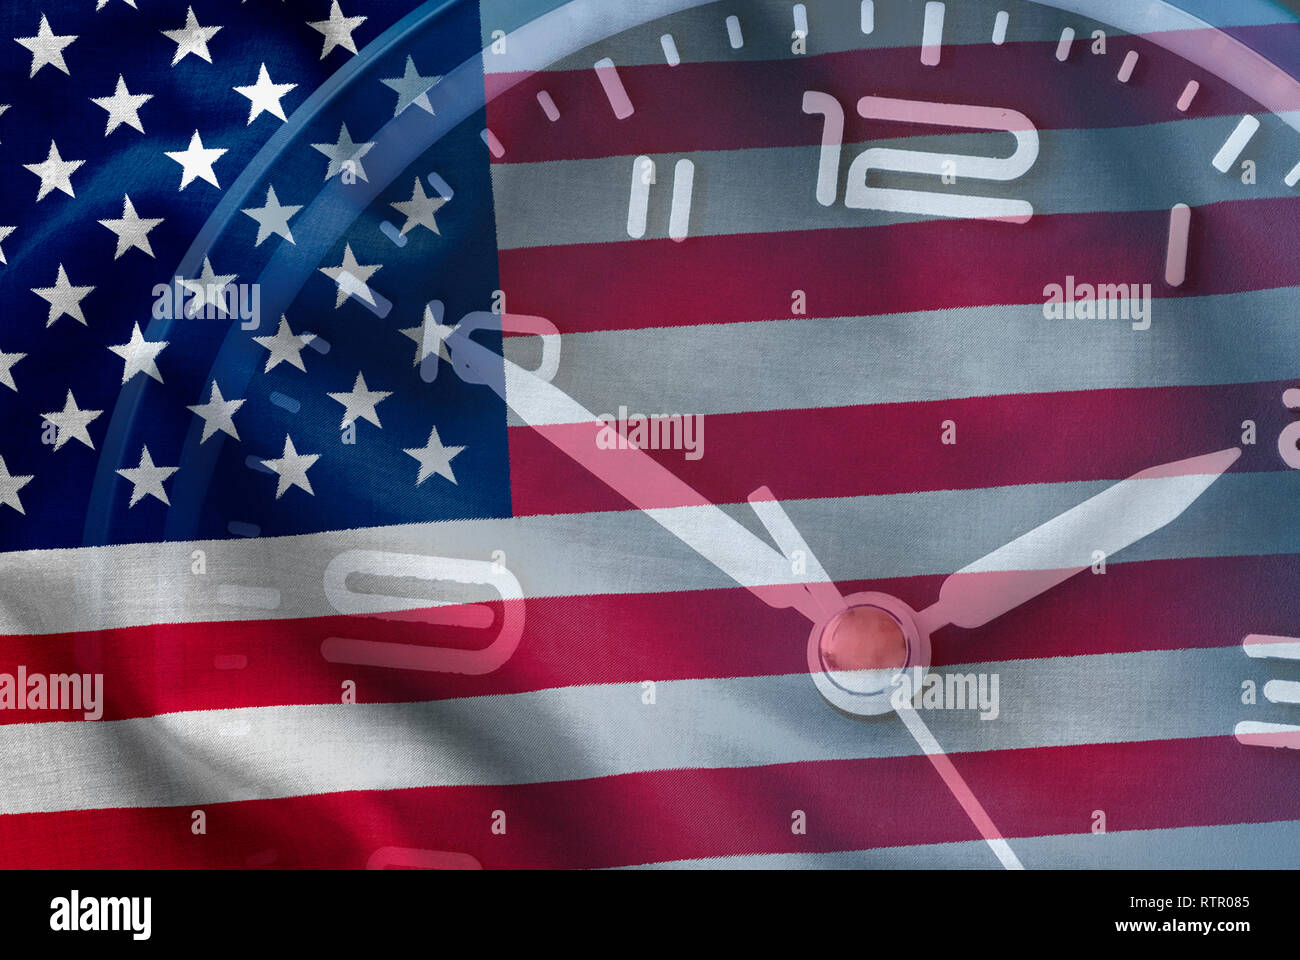 Des composites le drapeau américain, Stars and Stripes, ancienne gloire, avec une horloge dans une image conceptuelle Banque D'Images